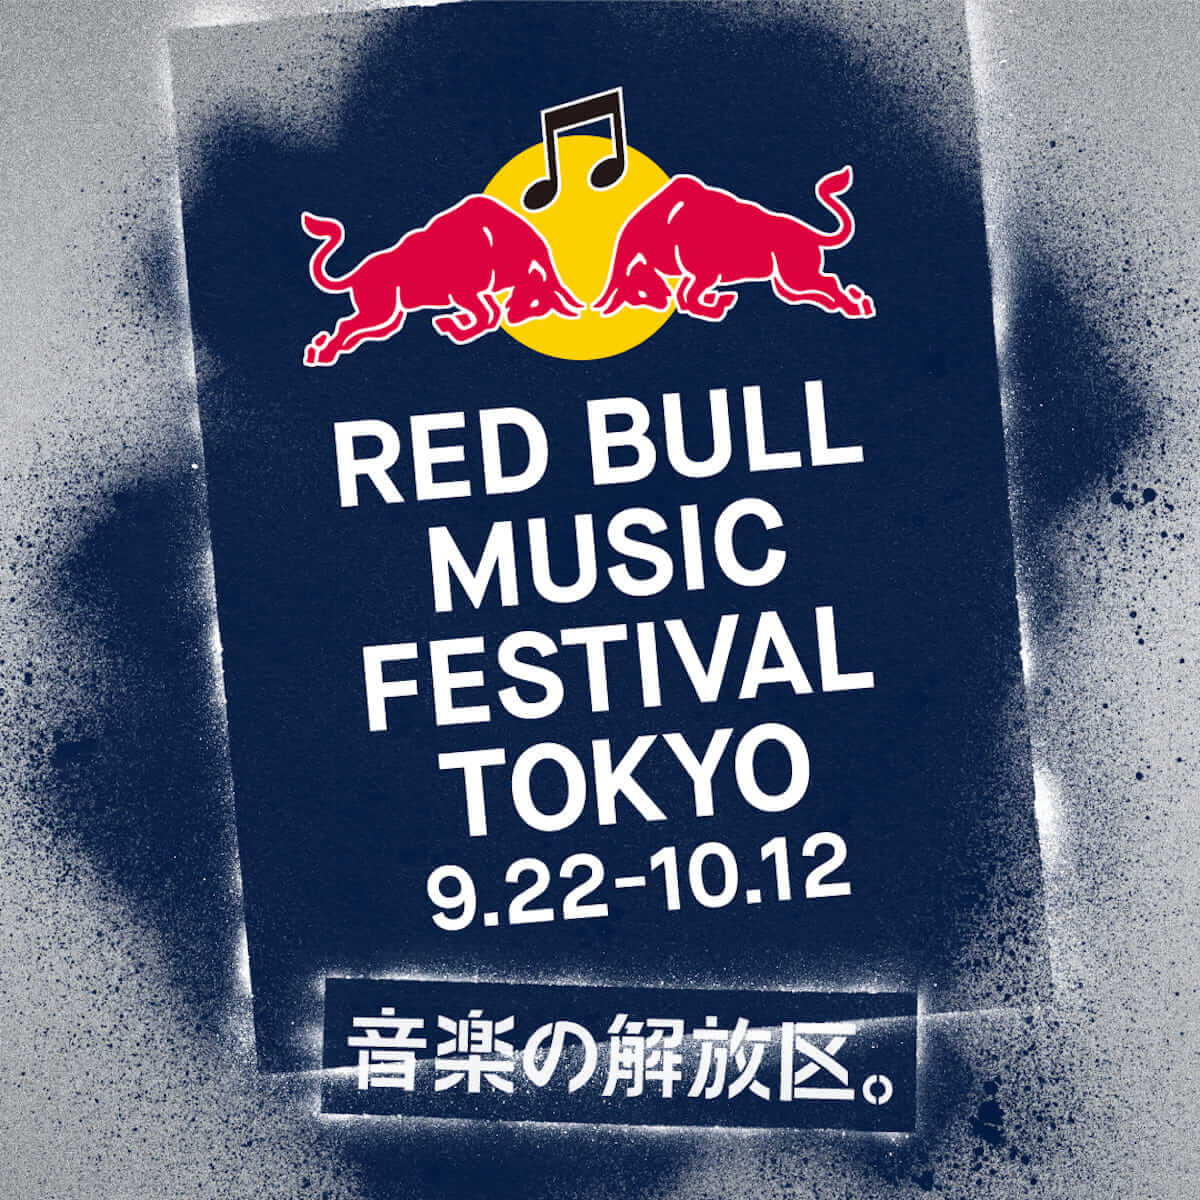 RED BULL MUSIC FESTIVAL TOKYO 2018